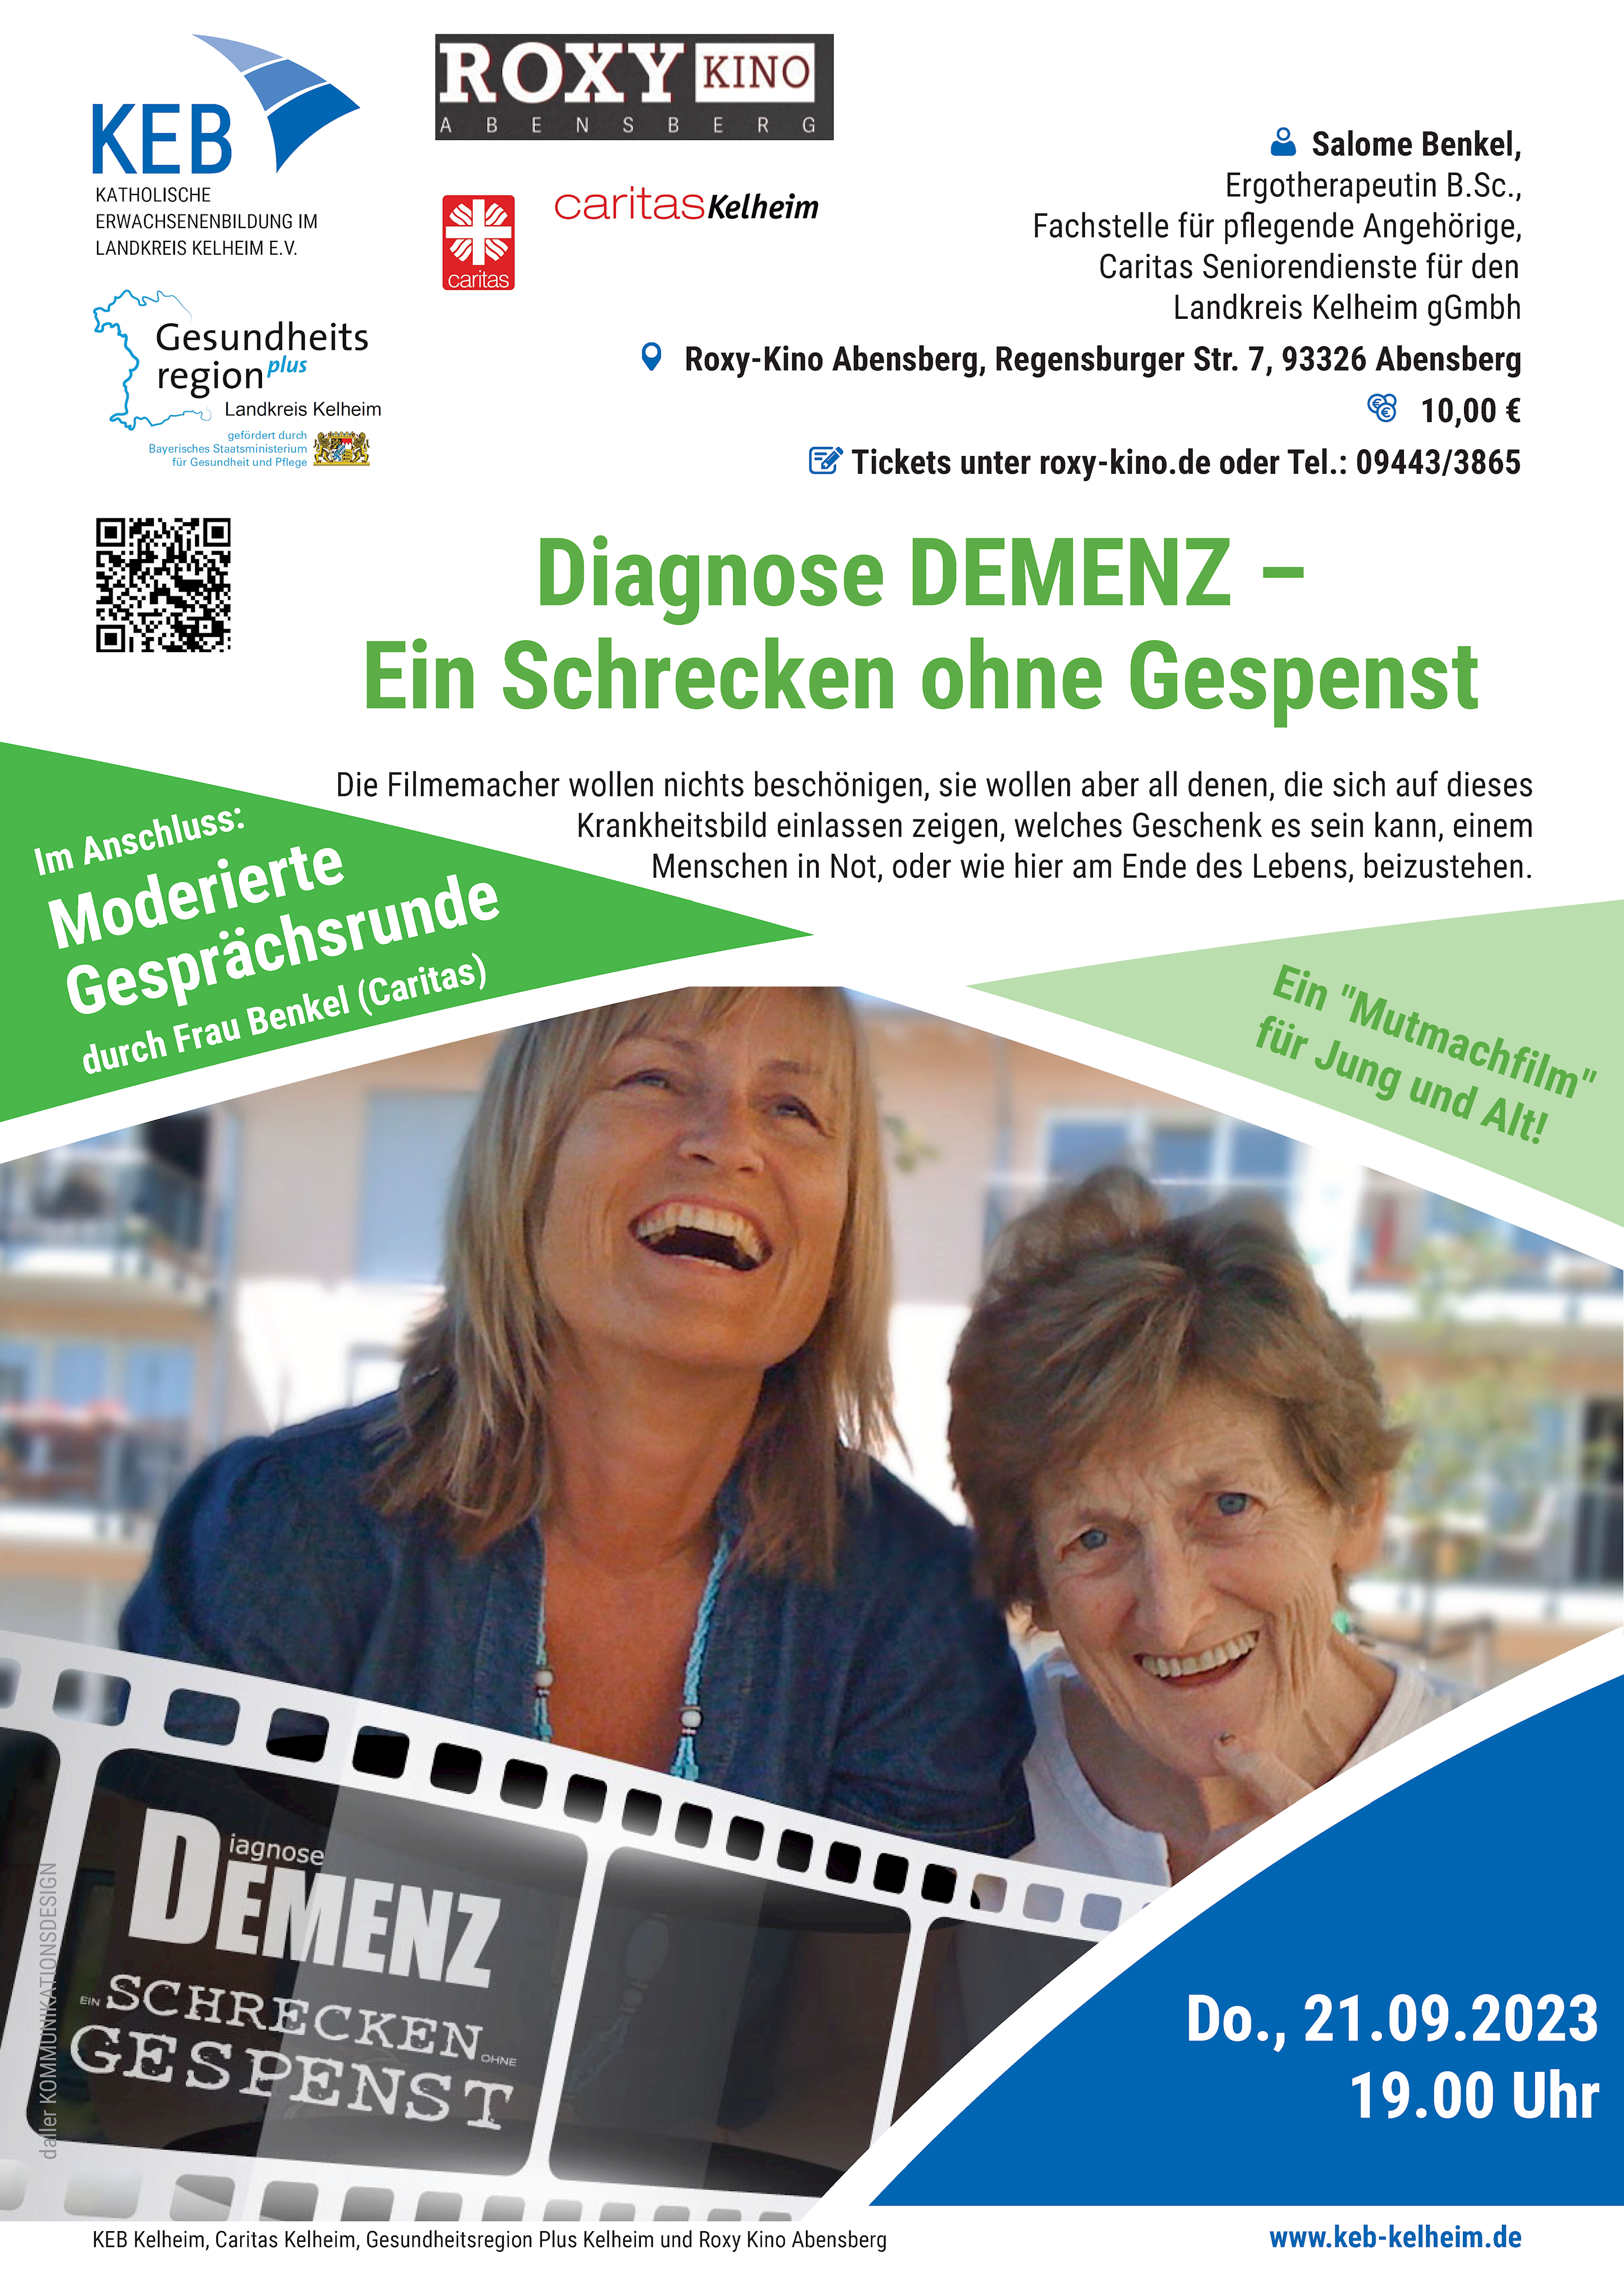 Diagnose DEMENZ - ein Schrecken ohne Gespenst - Filmabend im Roxy-Kino Abensberg